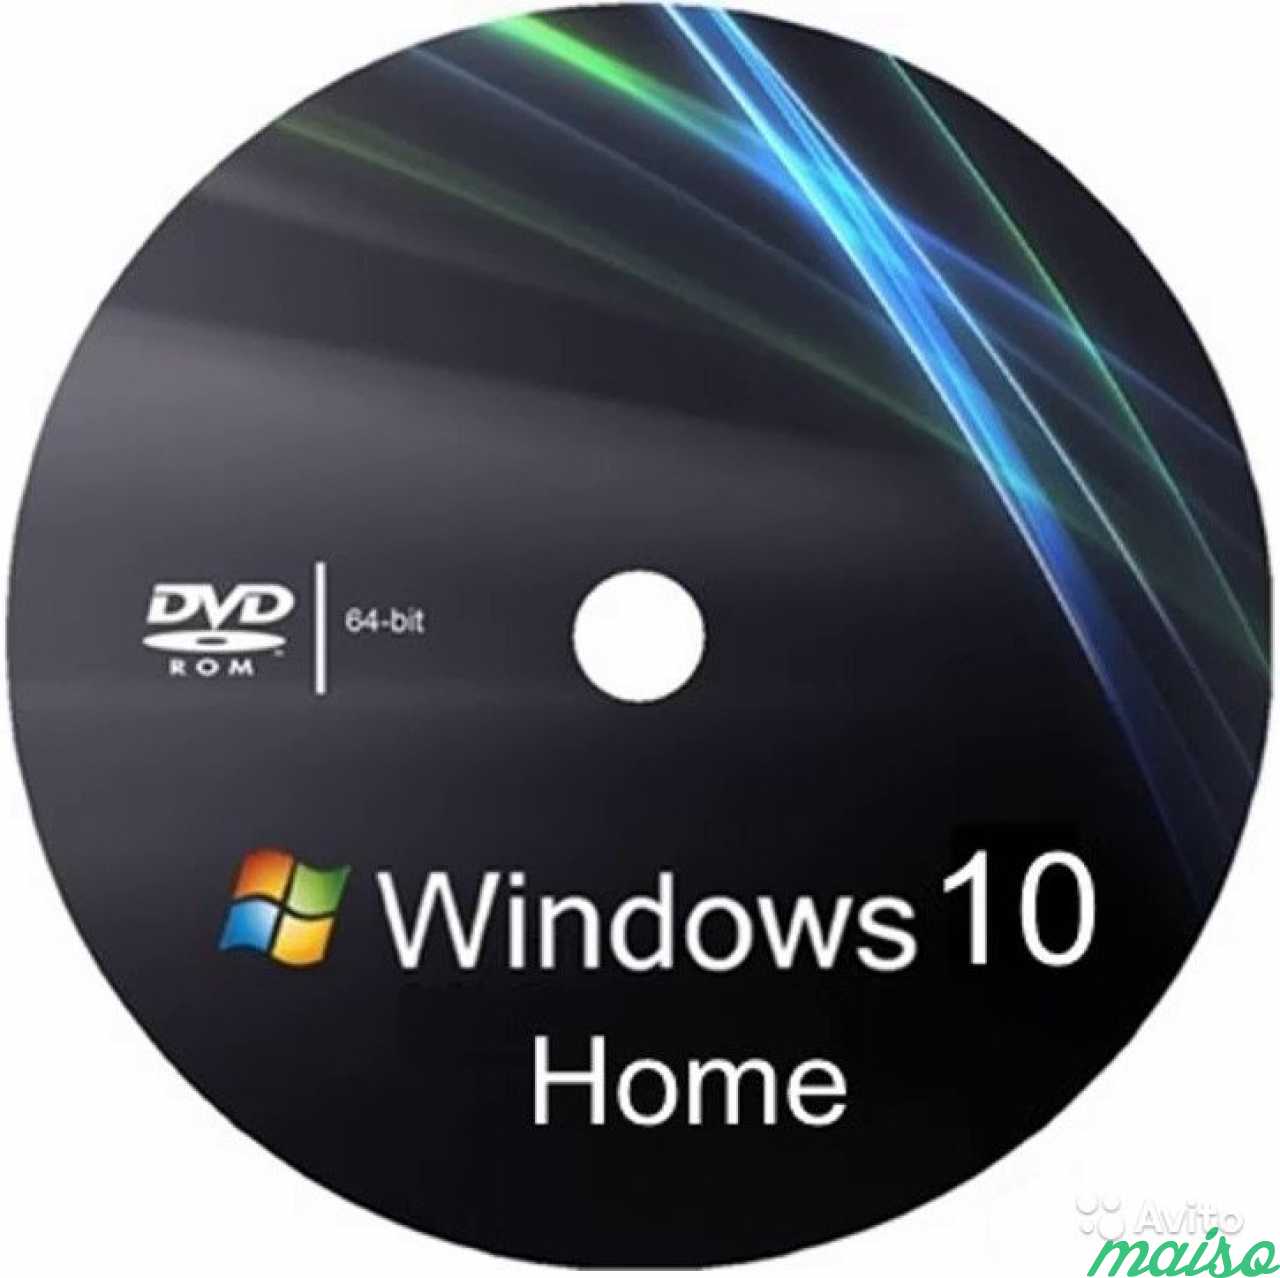 64 бита купить. Диск Windows 7 Ultimate 64 bit. Windows 7 Ultimate x64 диск. Диск с виндовс 10 64 бит. Виндовс 7 sp1 максимальная x64.